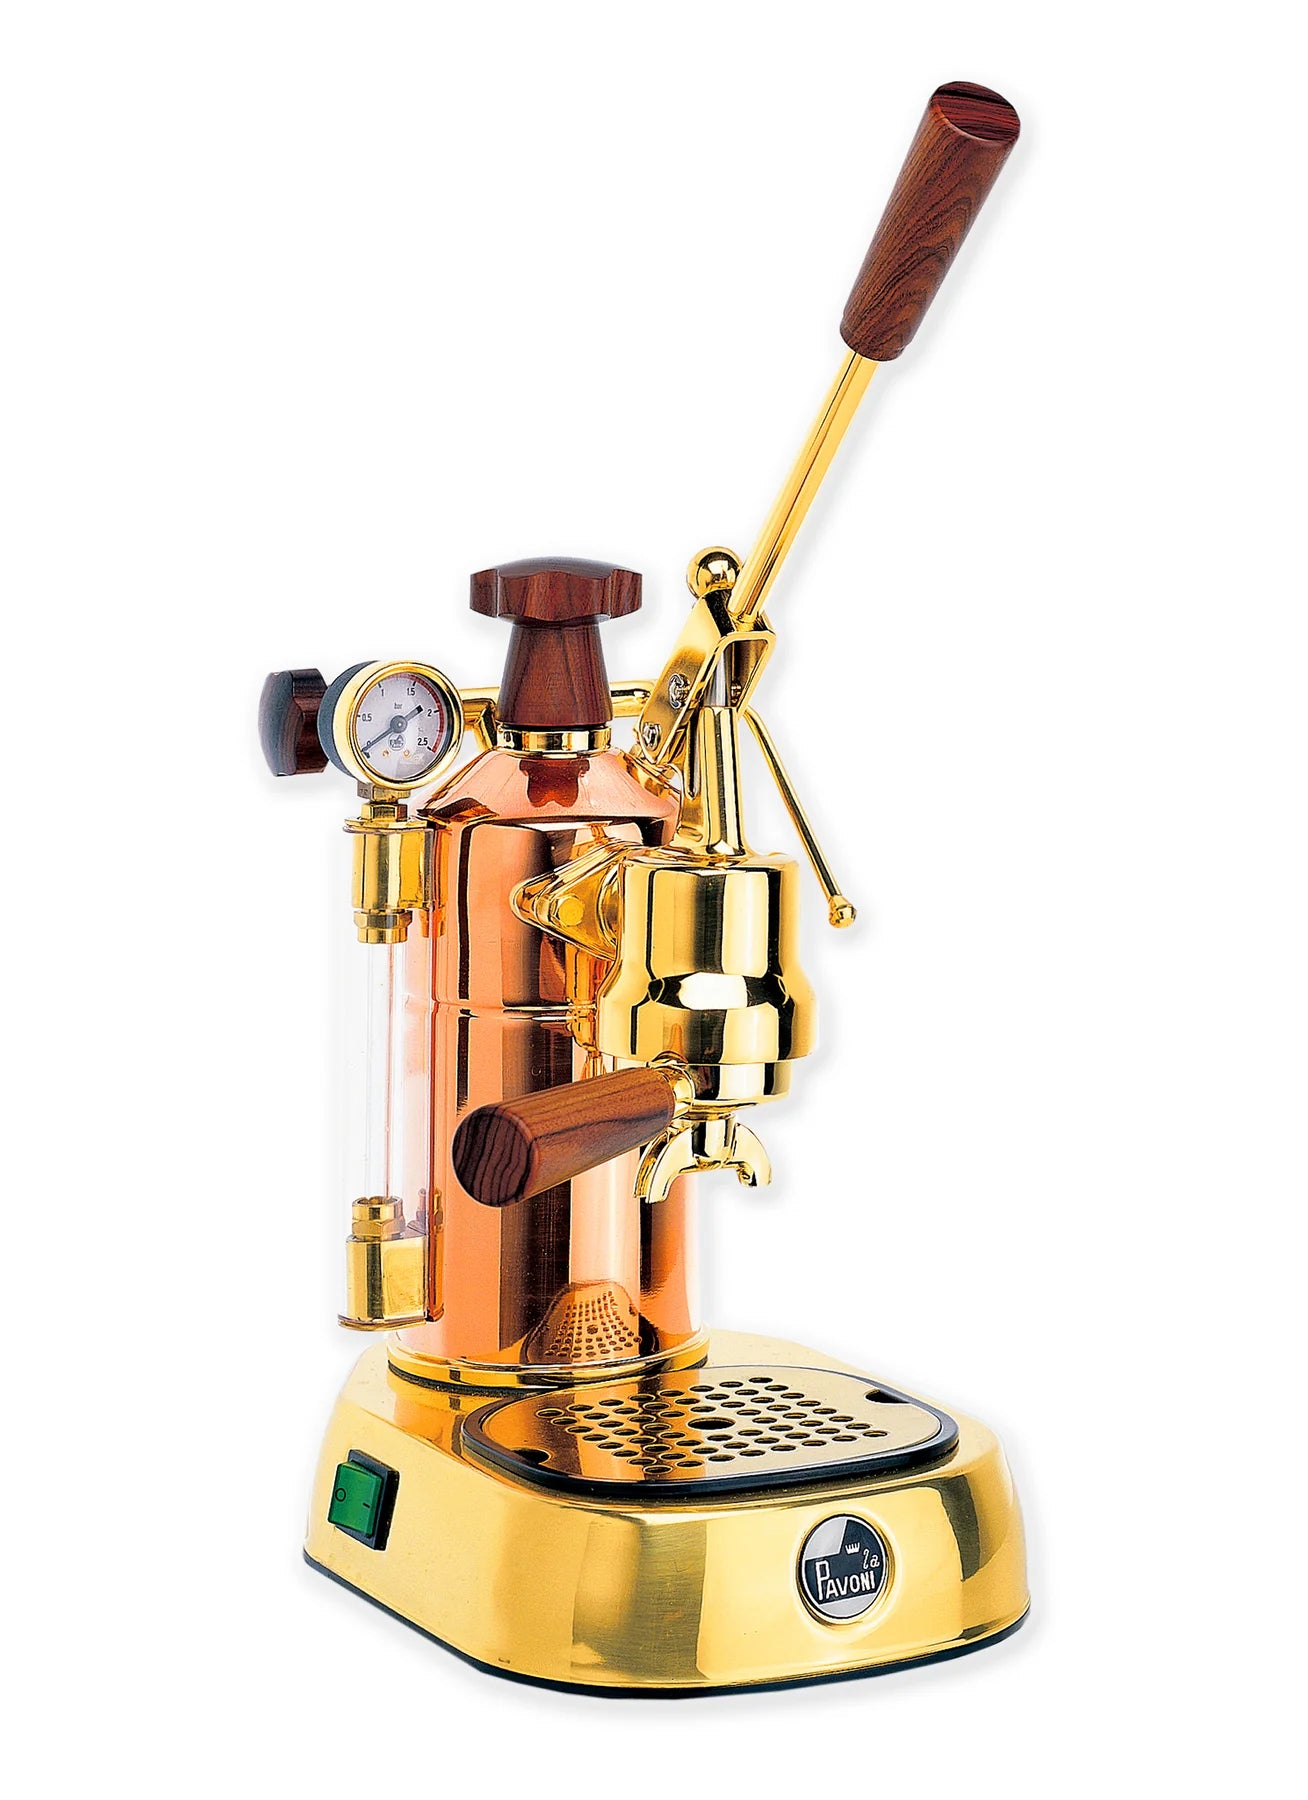 La Pavoni PB-16 Professional Espresso Machine - Copper & Brass